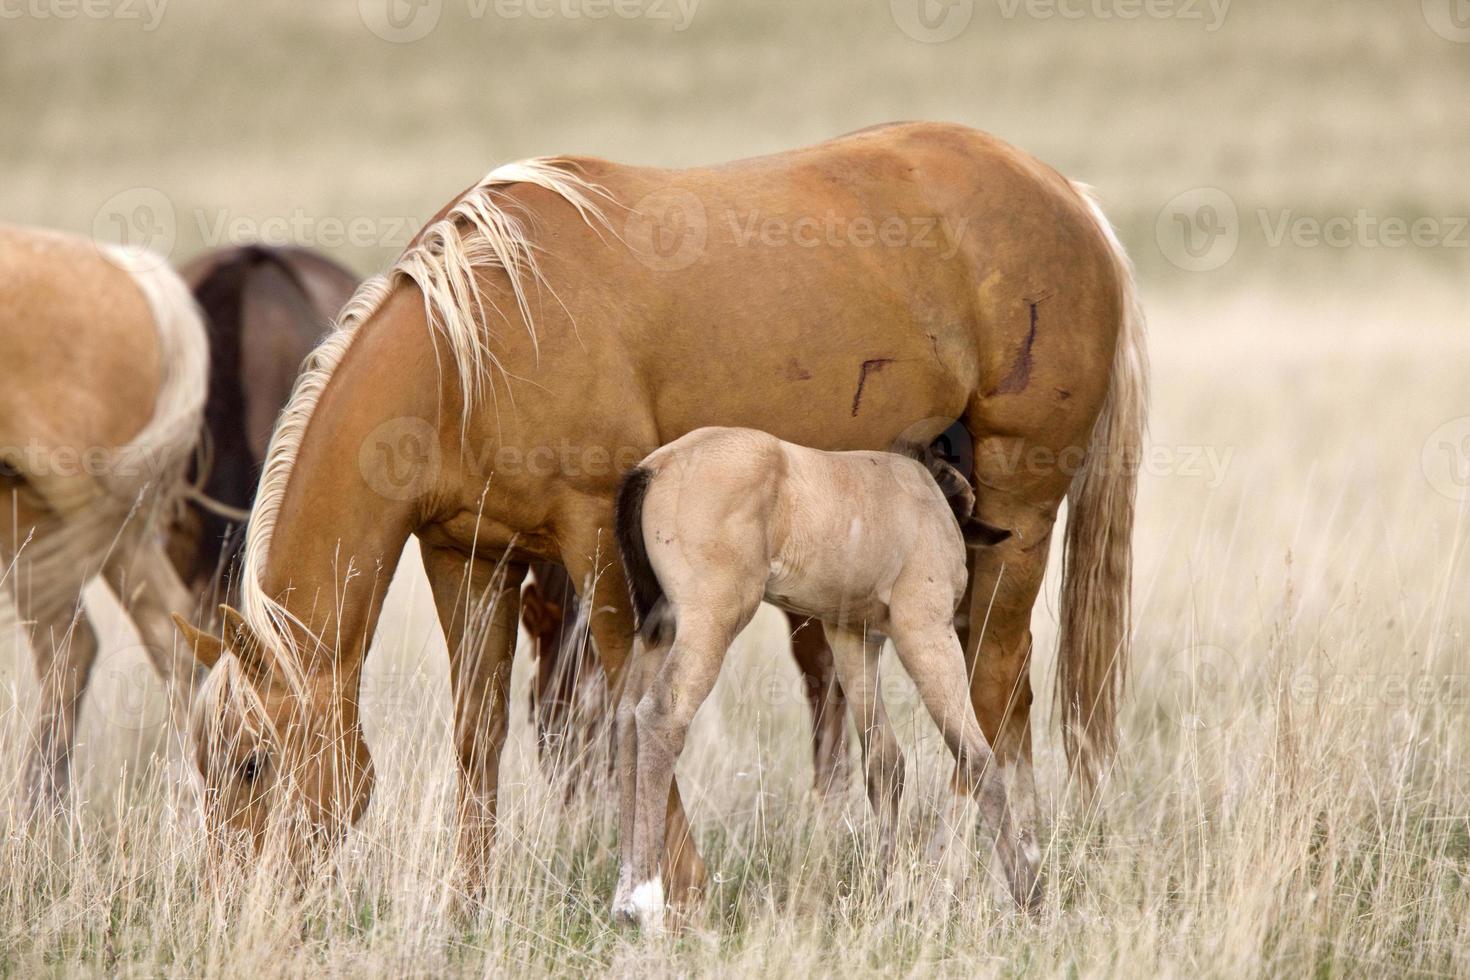 häst och hingstföl i betesmark Saskatchewan Kanada foto